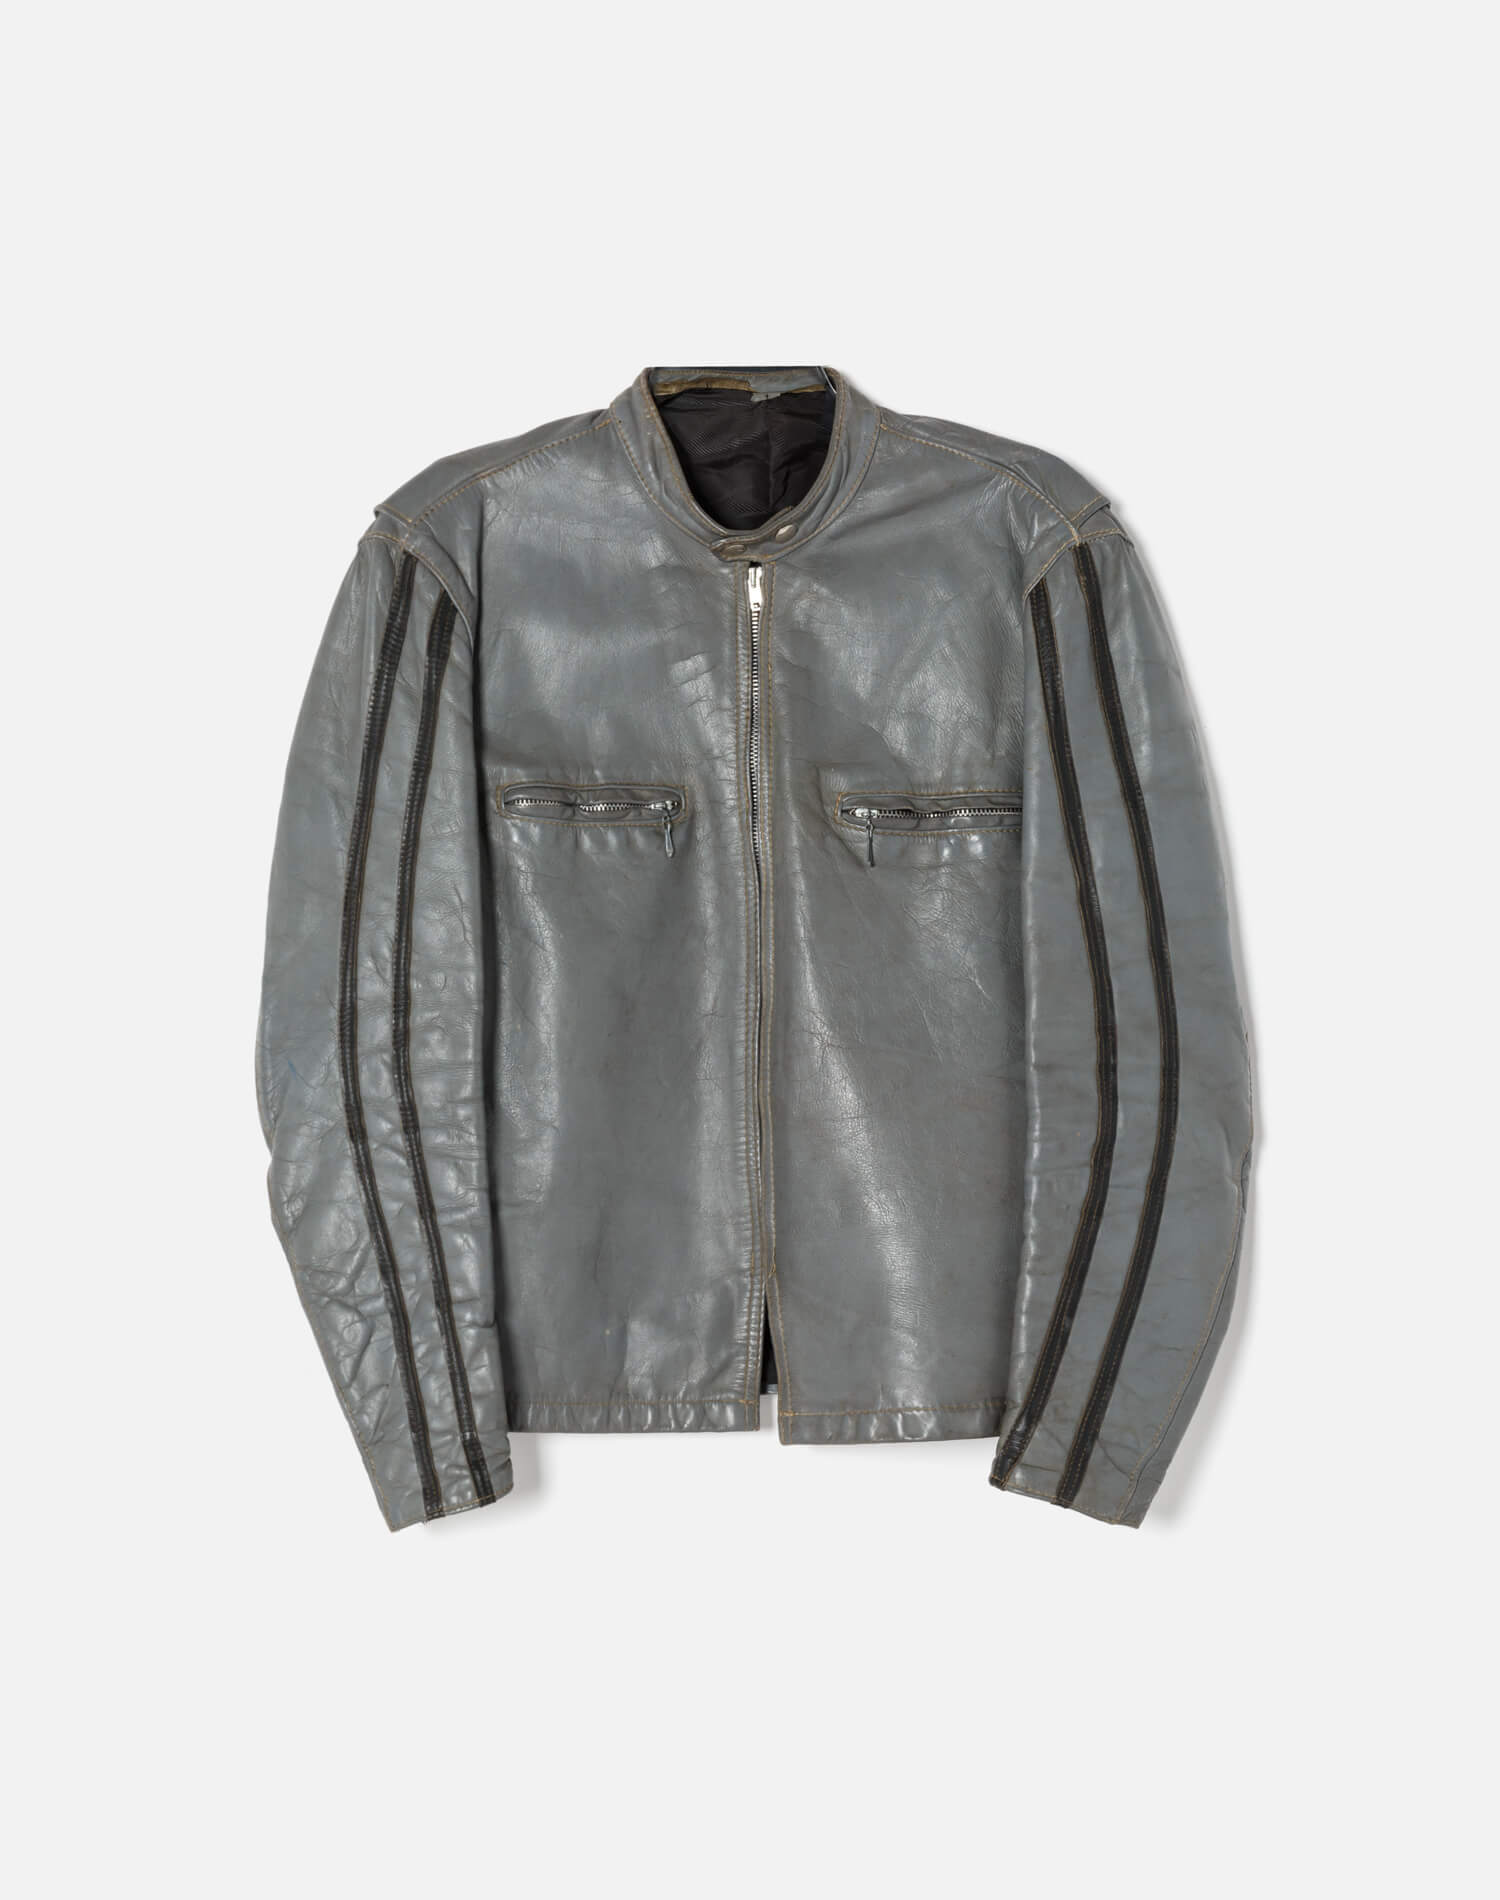 60s Vintage Cafe Racer Leather Jacket